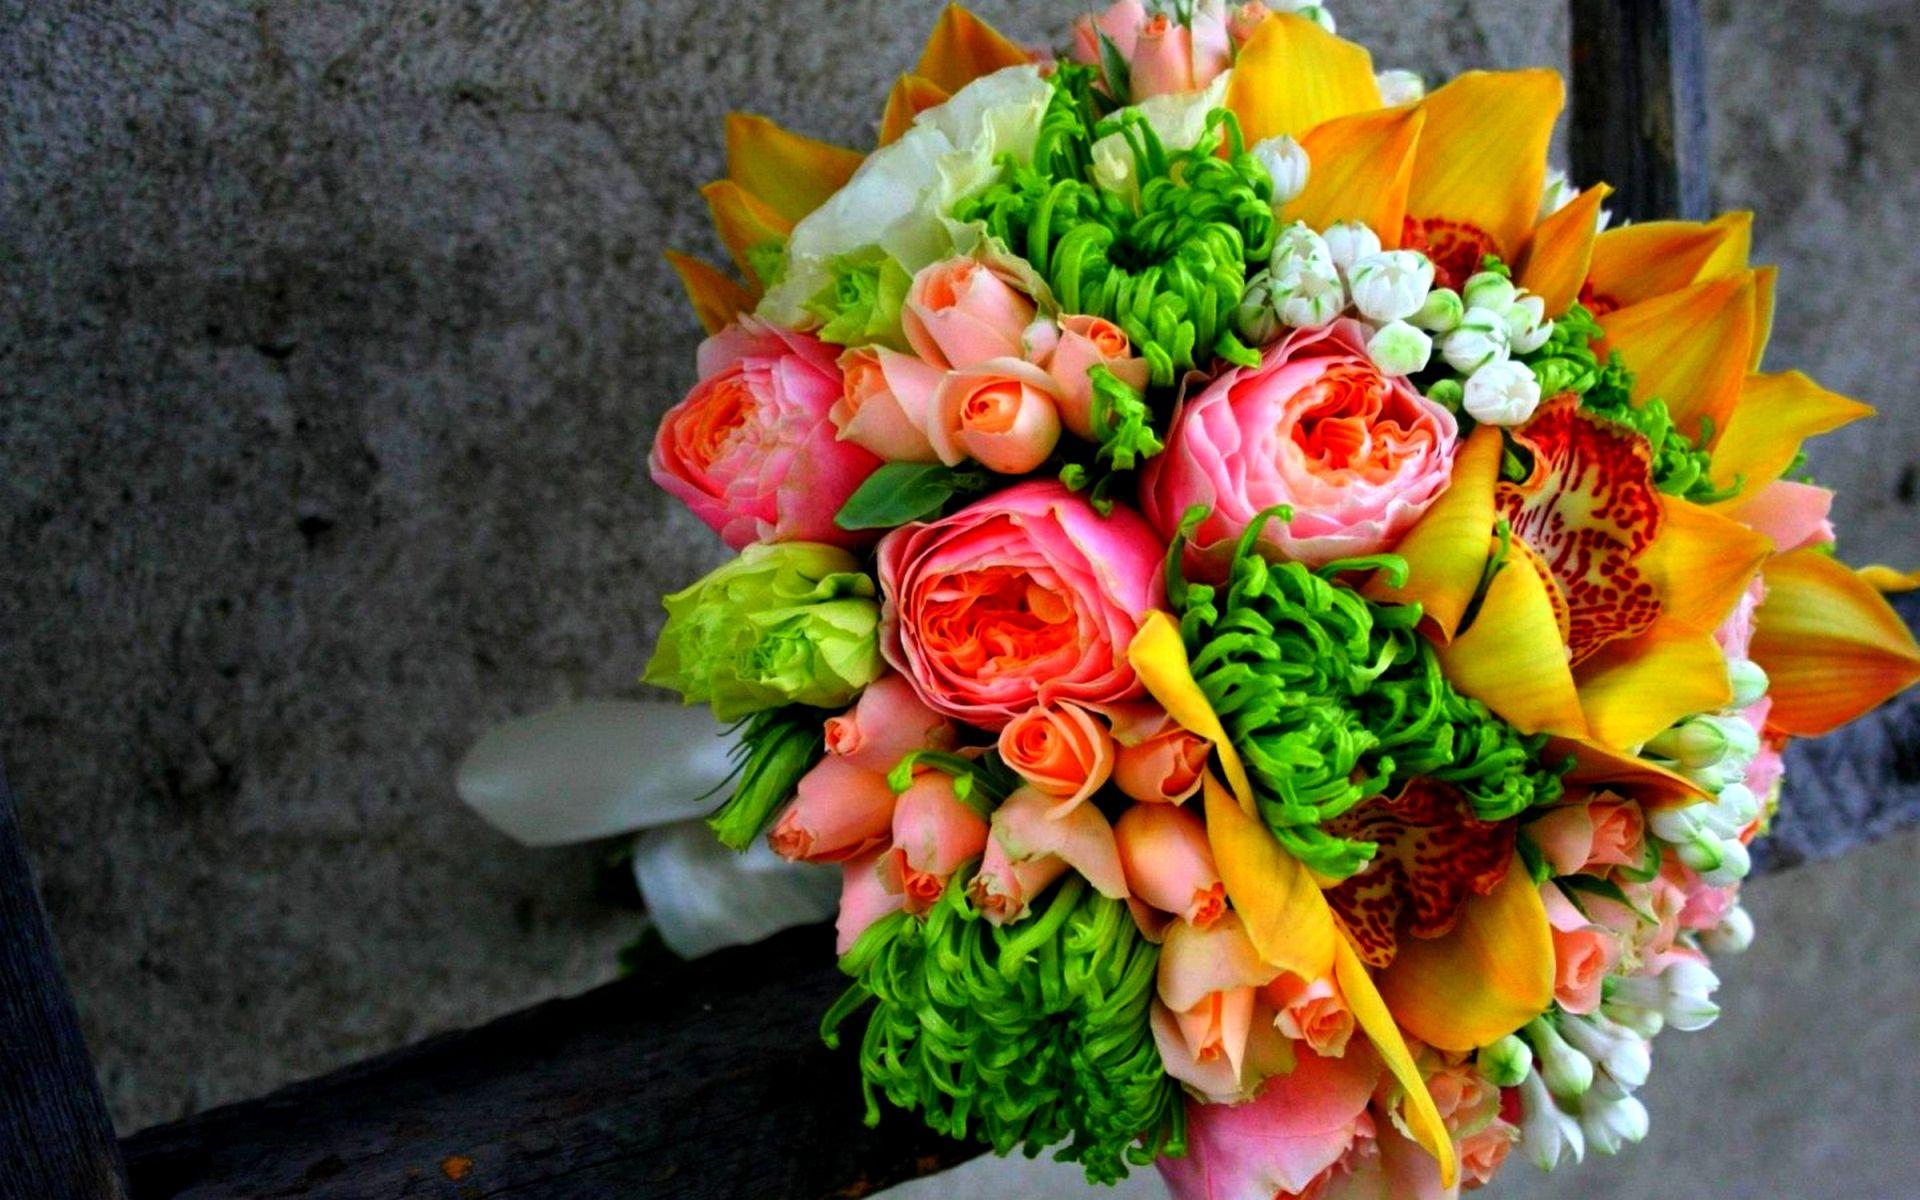 HD Wallpaper 1080p Bouquet. Flower bouquet picture, Flower bokeh, HD flower wallpaper